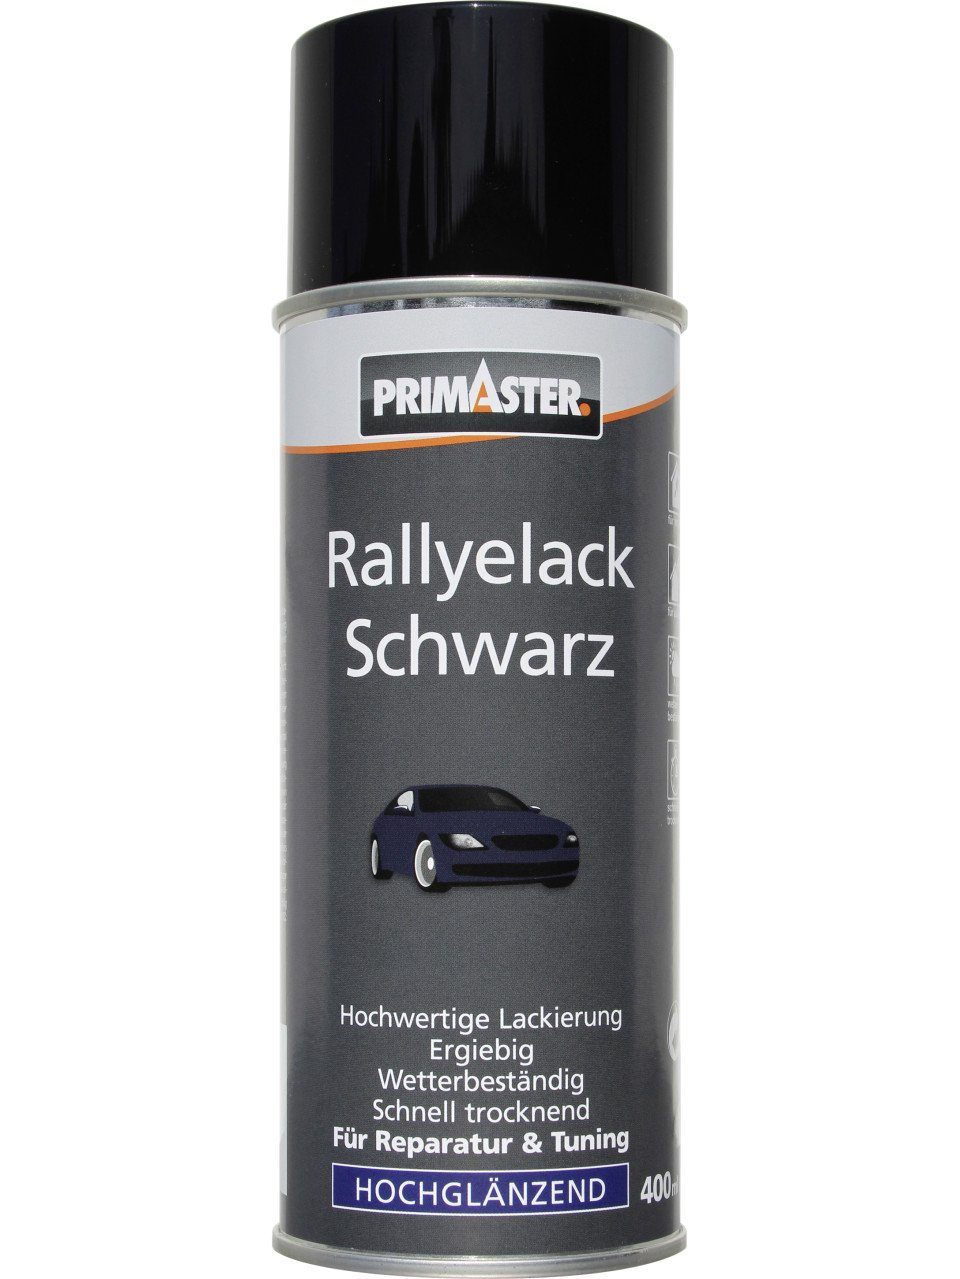 Rallye-Lackspray glänzend Primaster 400ml Primaster Sprühlack schwarz